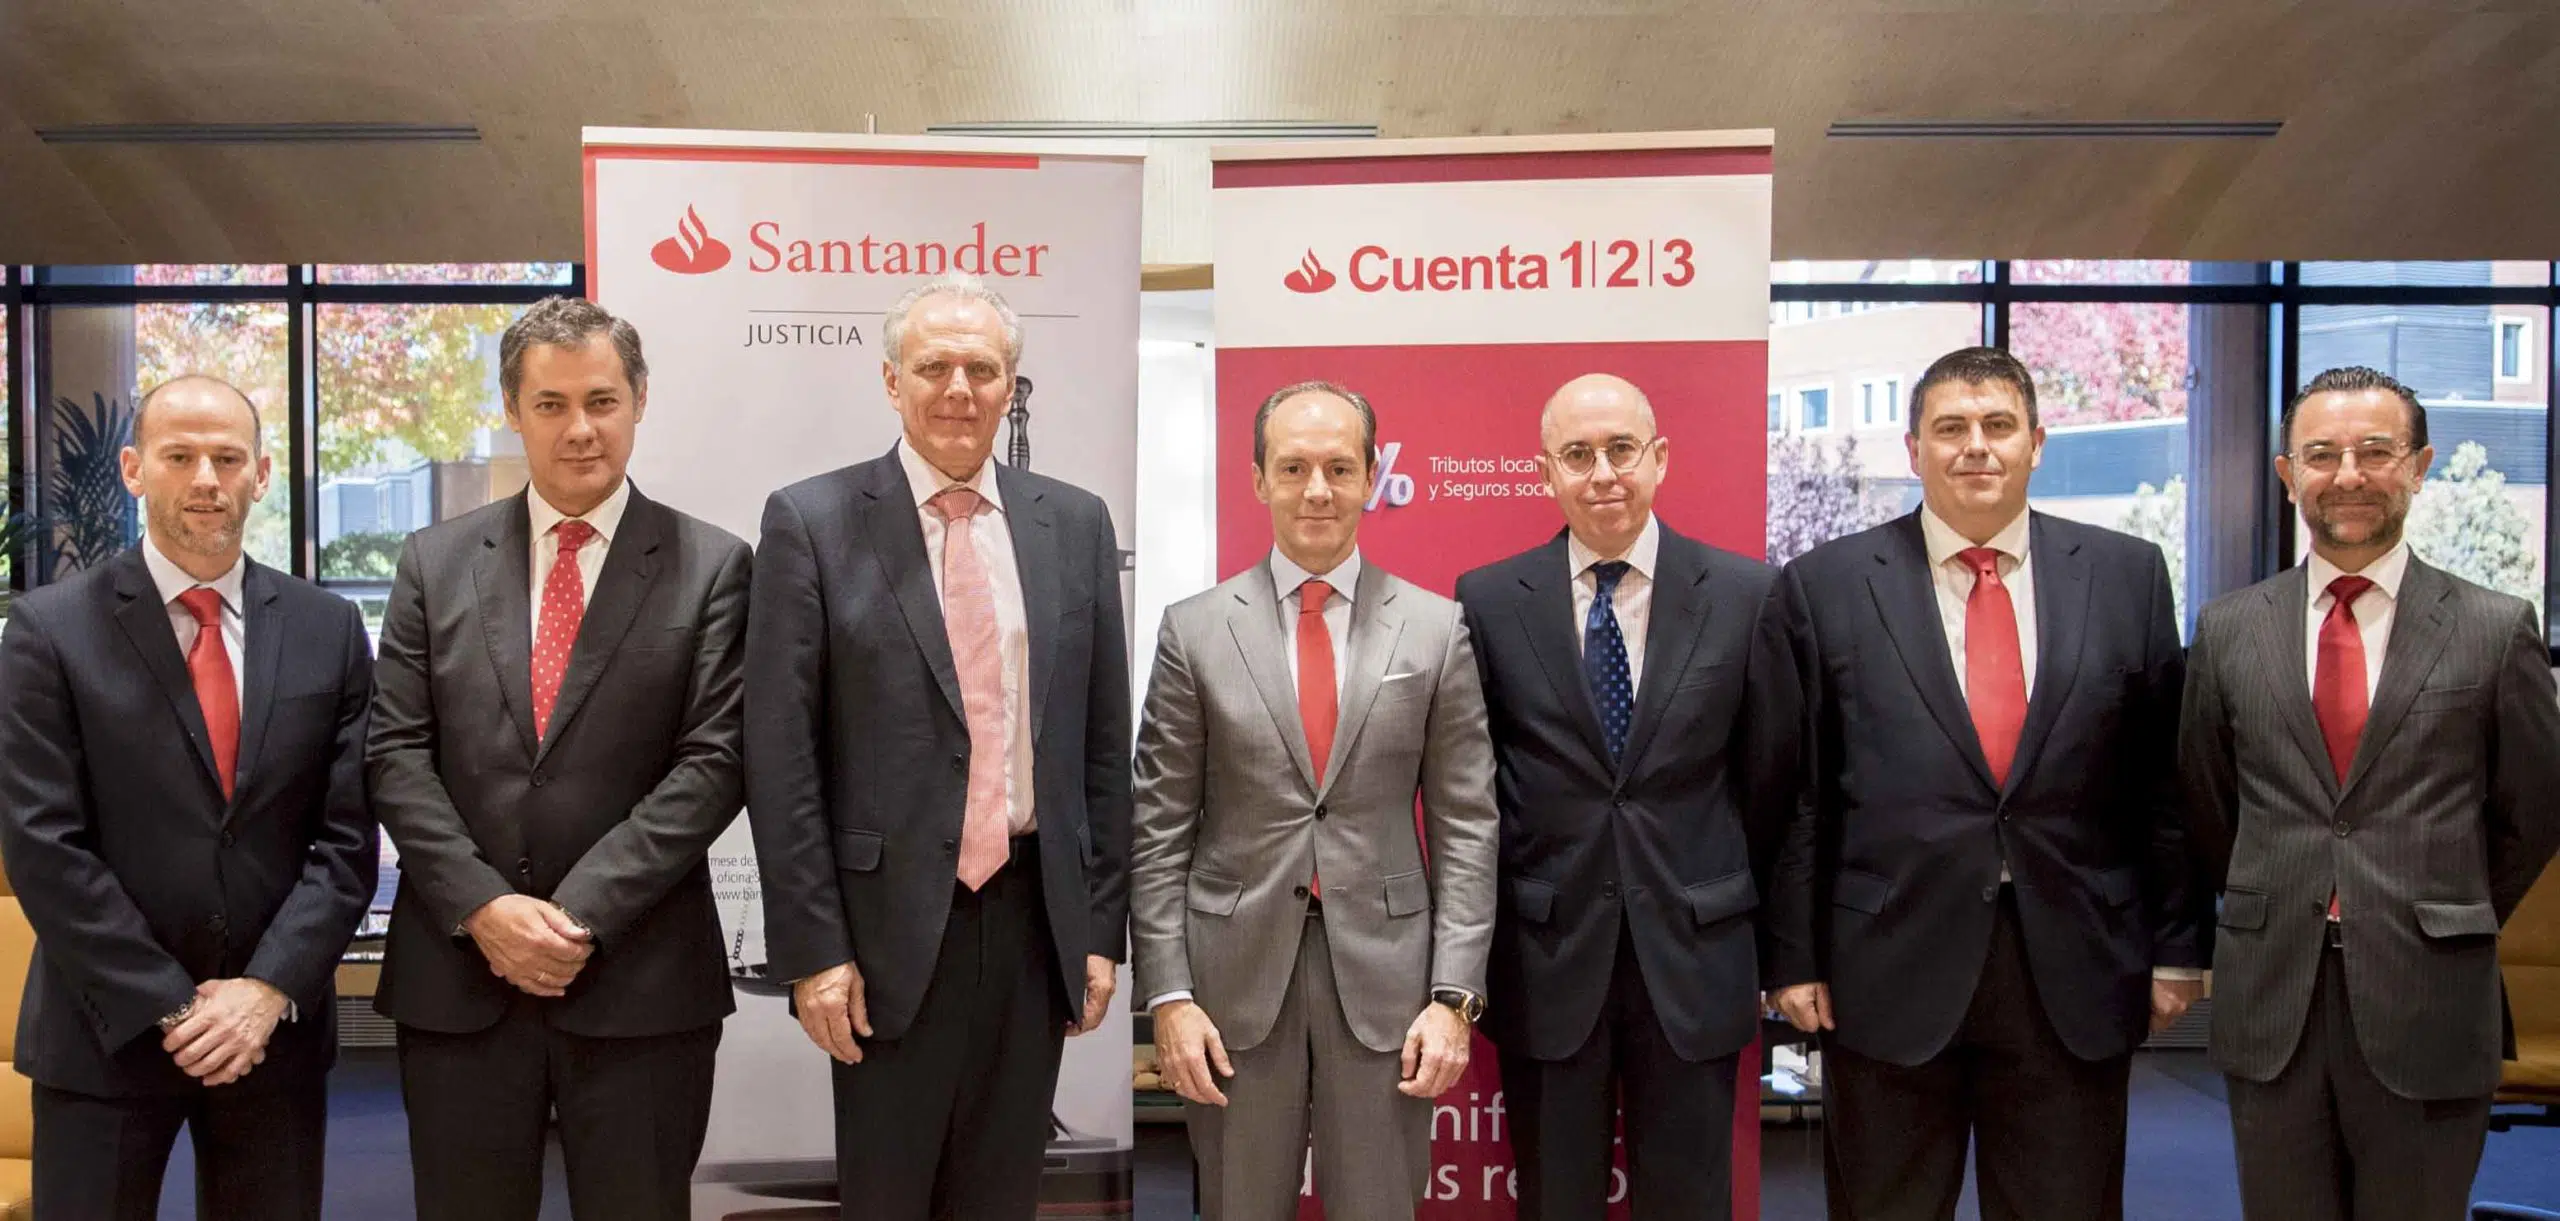 Las subastas notariales serán gestionadas en exclusiva por el Banco Santander